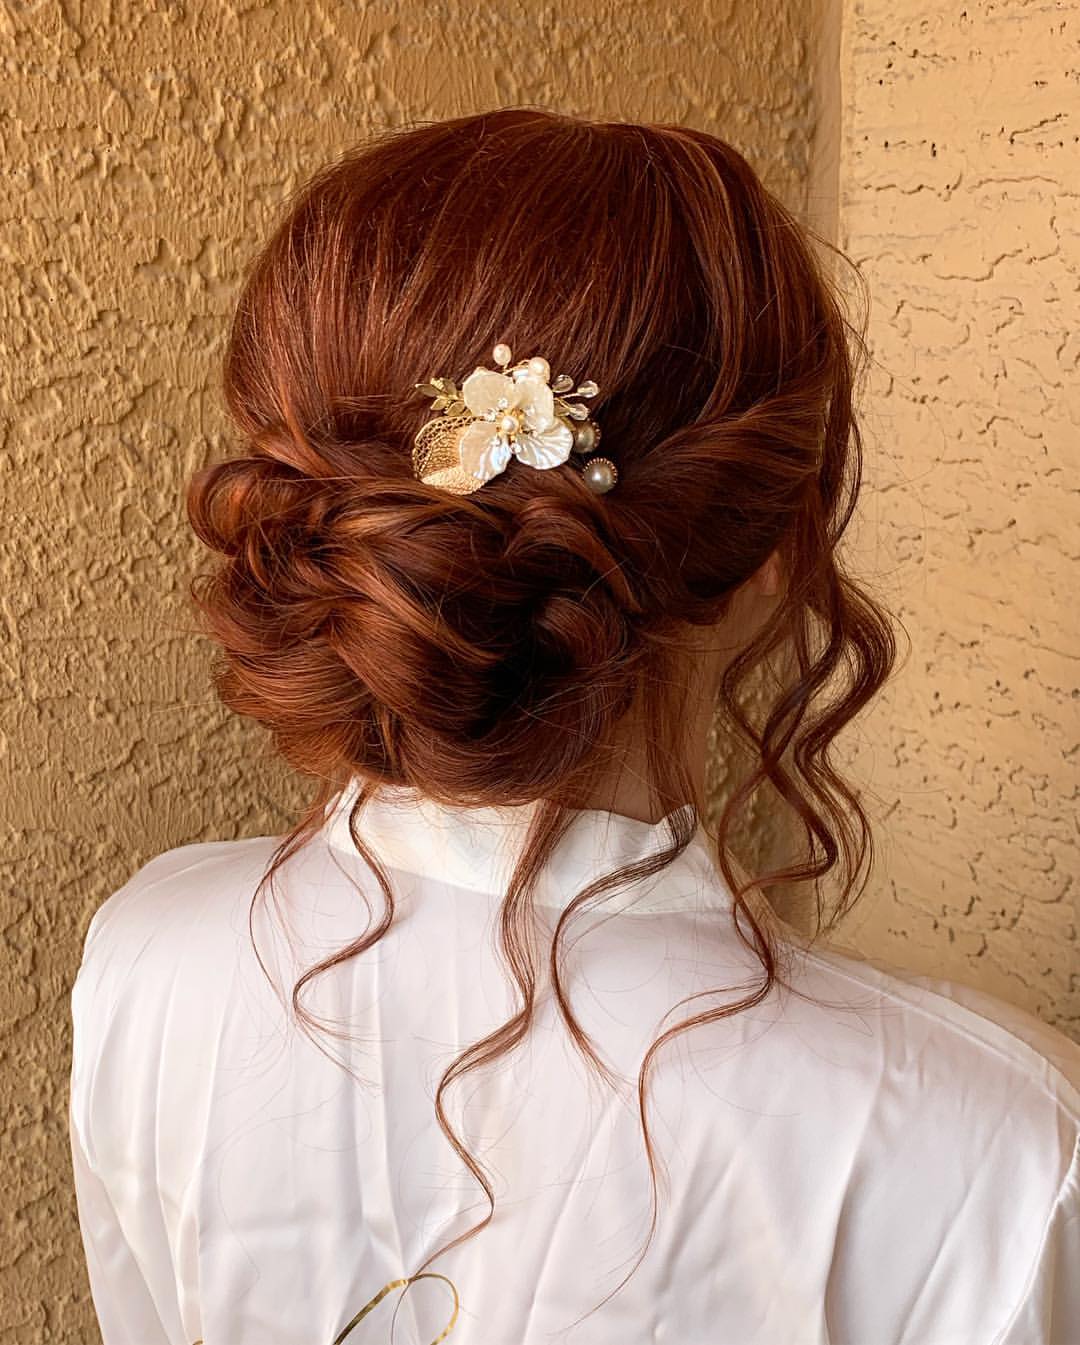 Acconciatura da sposa romantica su capelli rossi